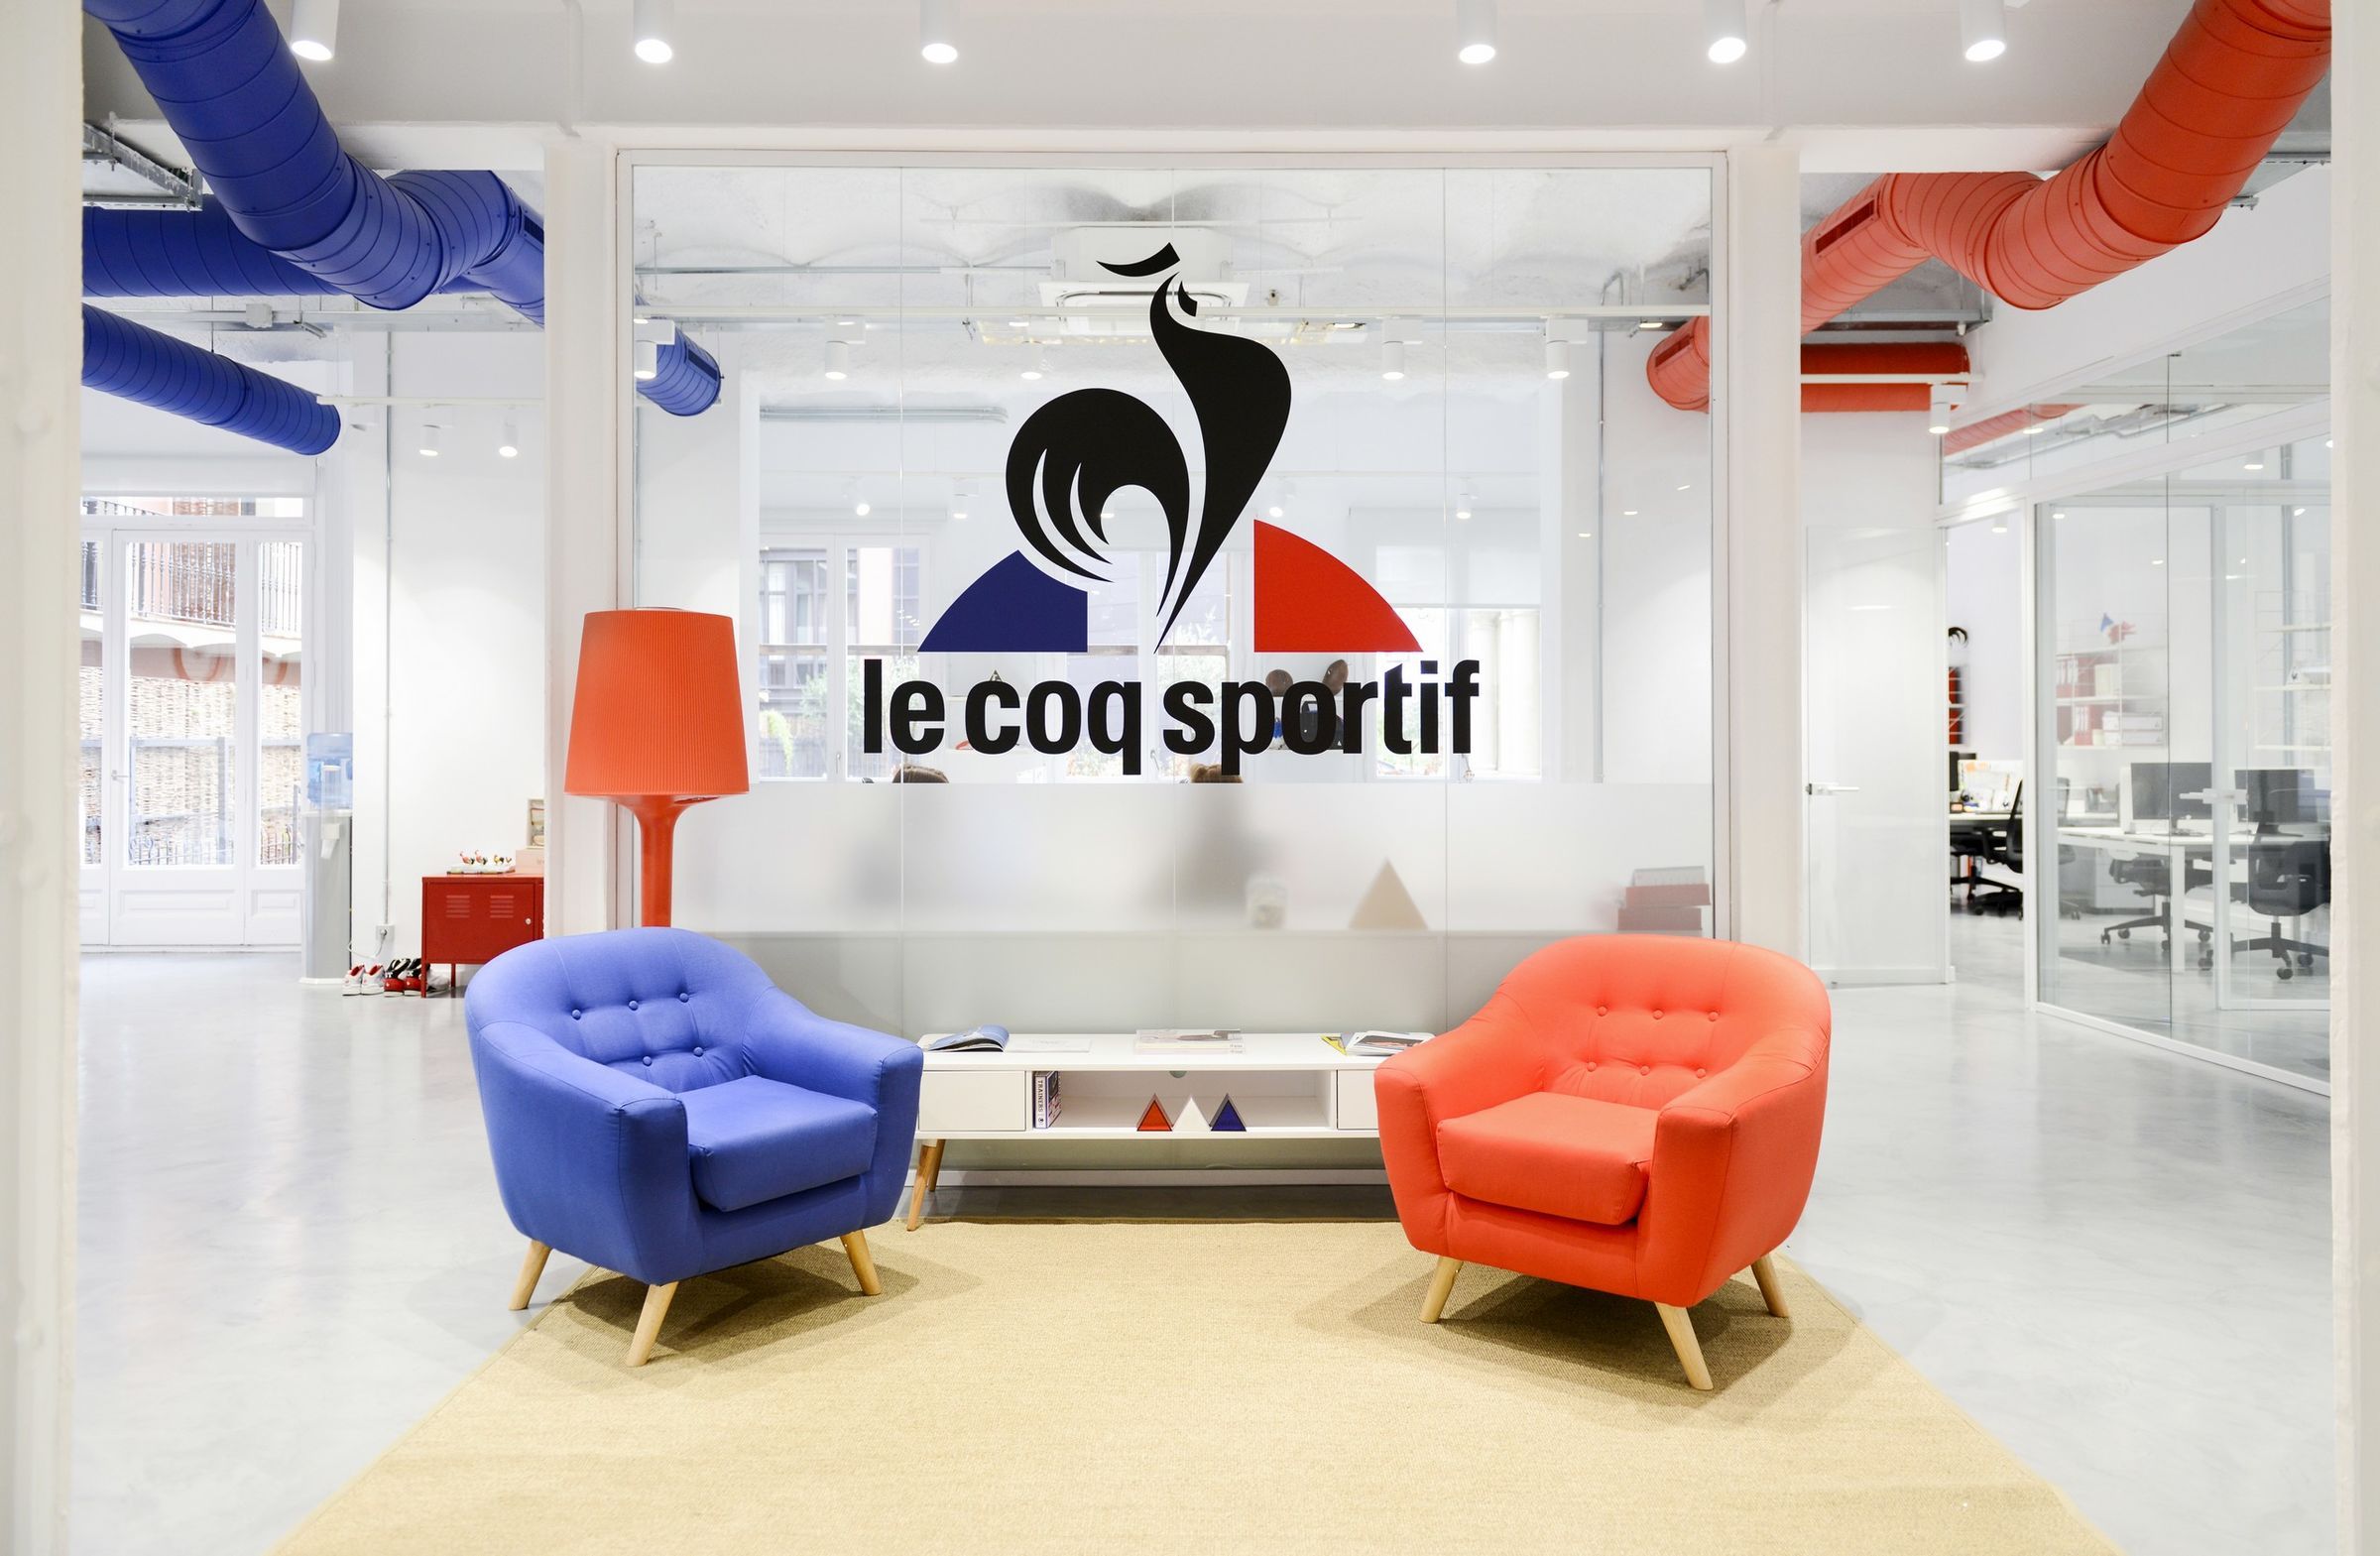 Le Coq Sportif abre una pop-up store en La Roca Village - CMD Sport